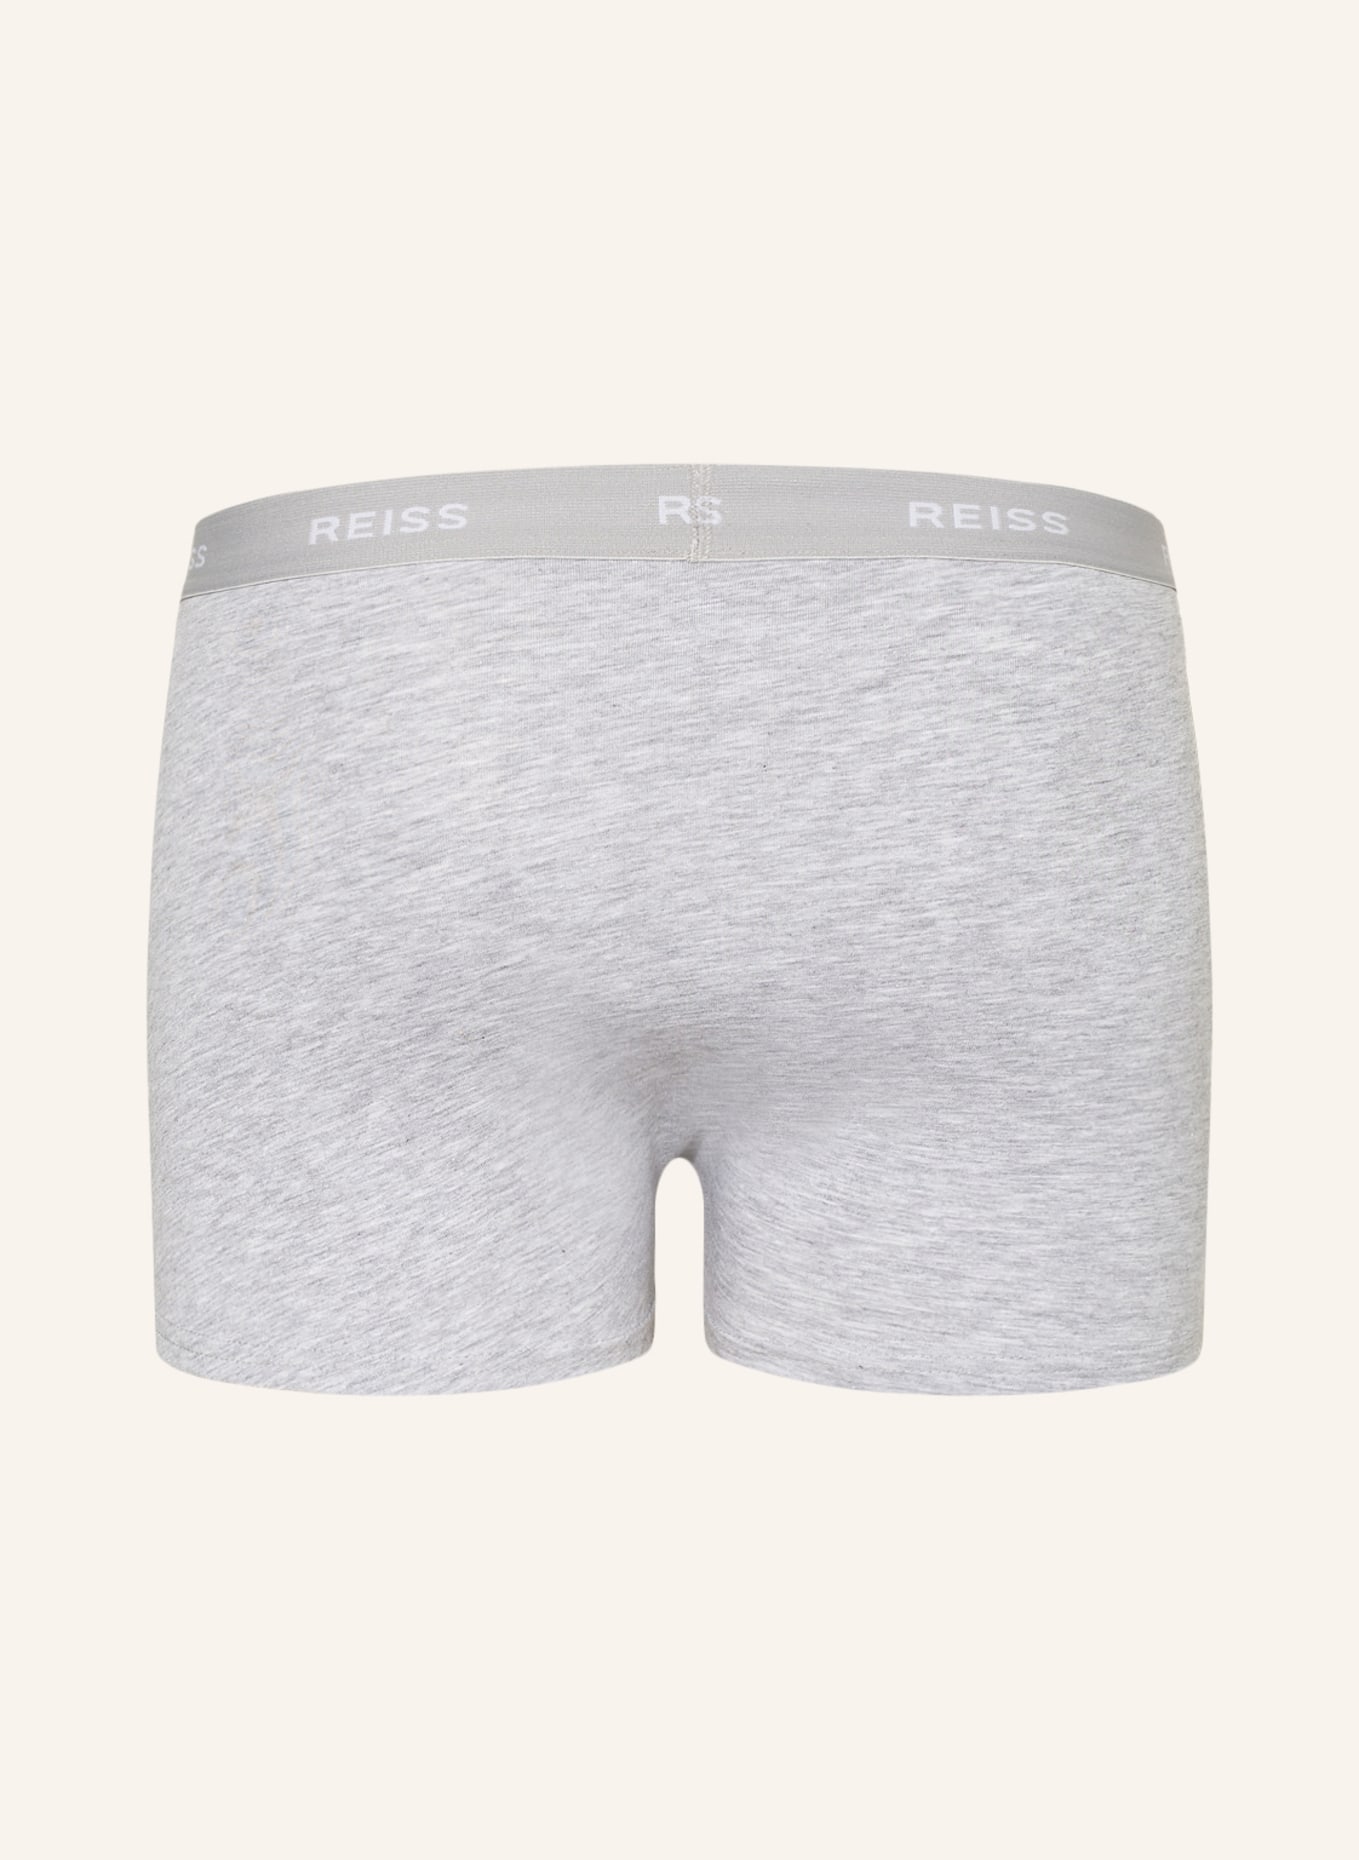 REISS 3-pack boxer shorts HELLER, Color: BLACK/ WHITE/ GRAY (Image 2)